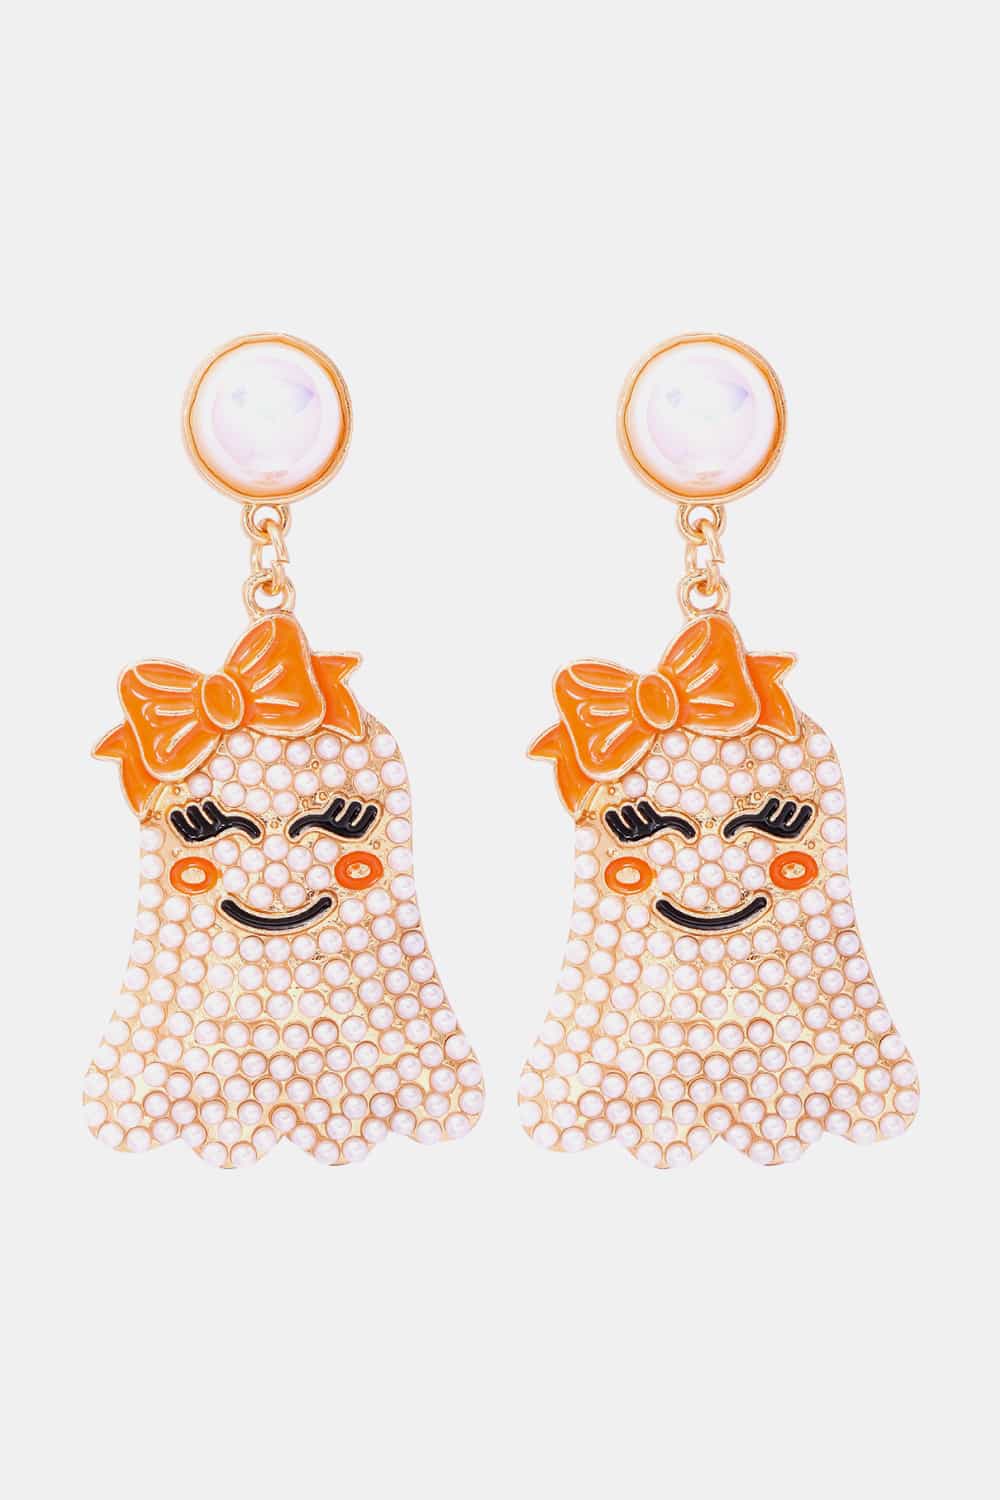 Smiling Ghost Shape Synthetic Pearl Earrings - White / One Size - Women’s Jewelry - Earrings - 12 - 2024